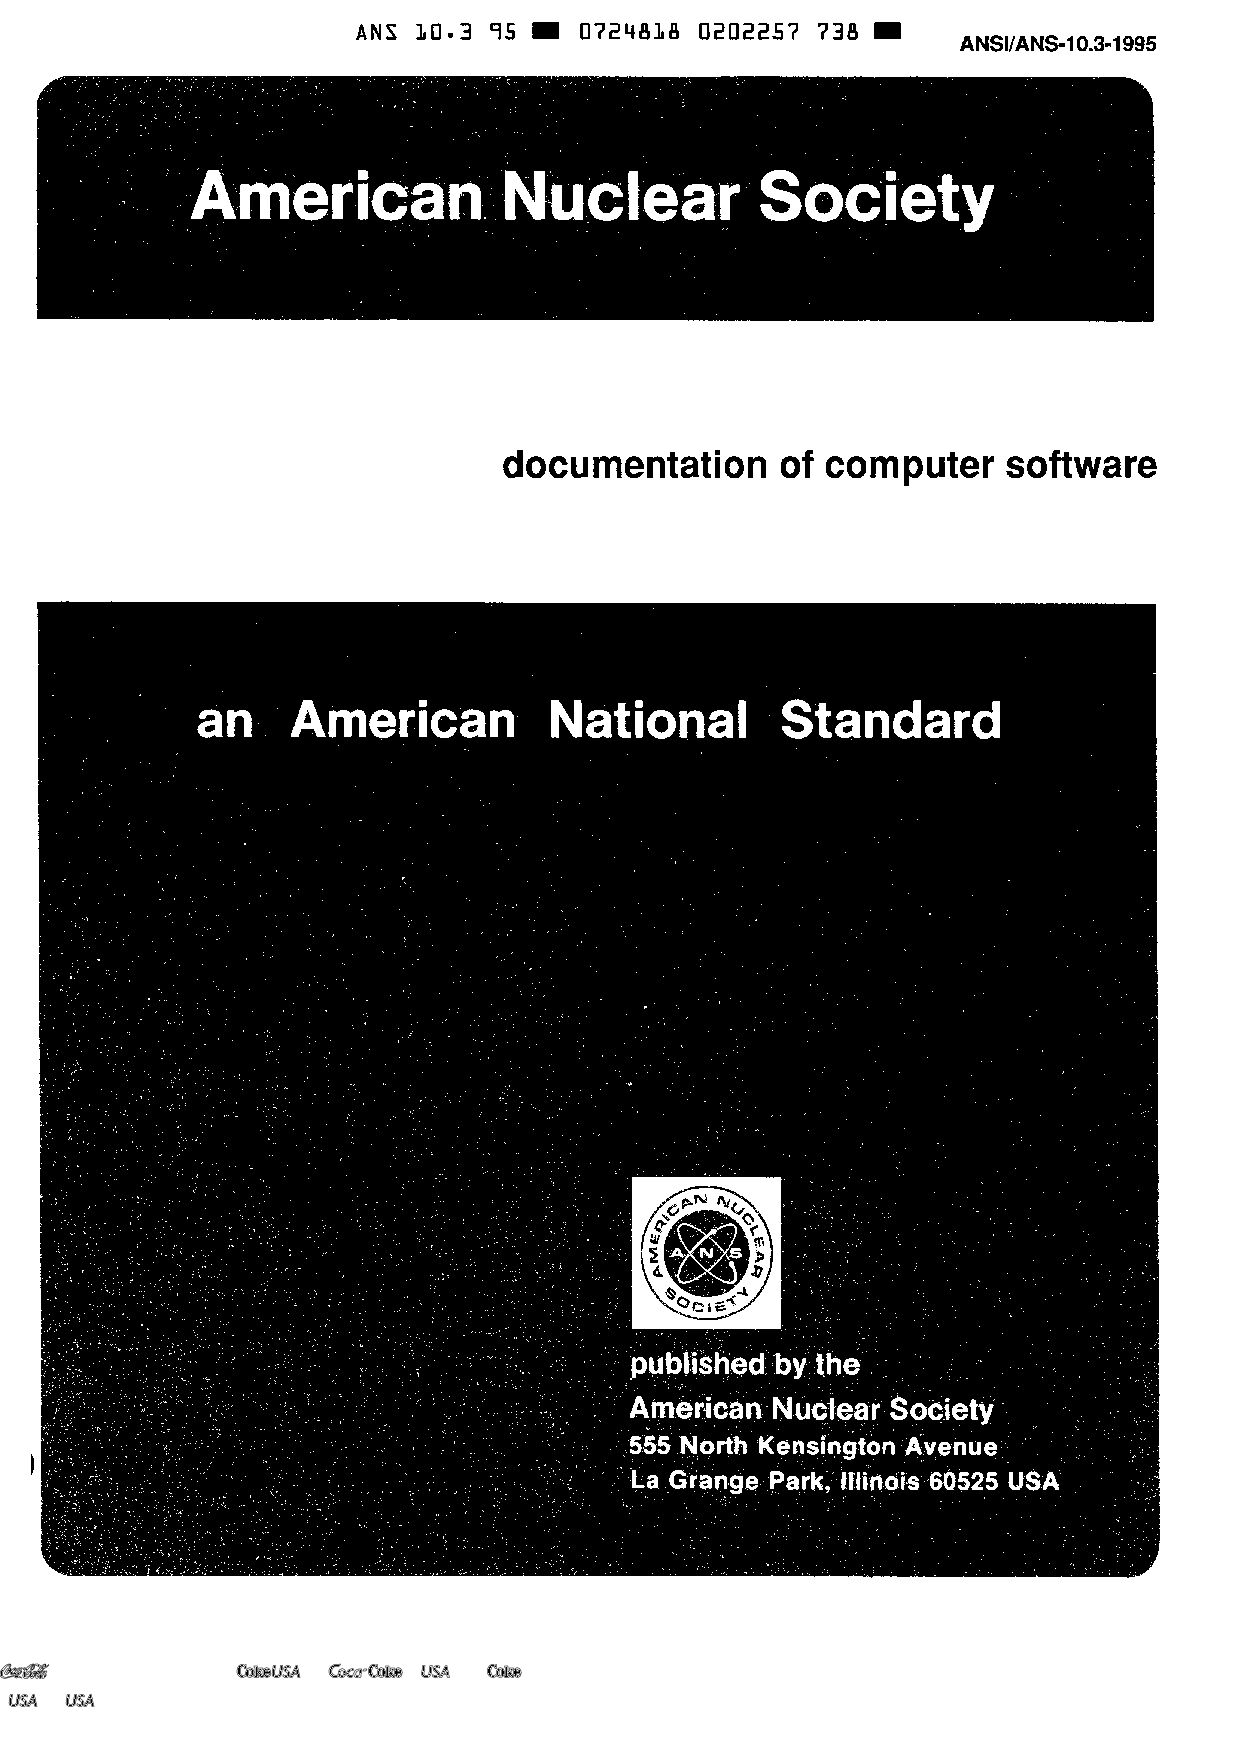 ANSI/ANS 10.3-1995封面图